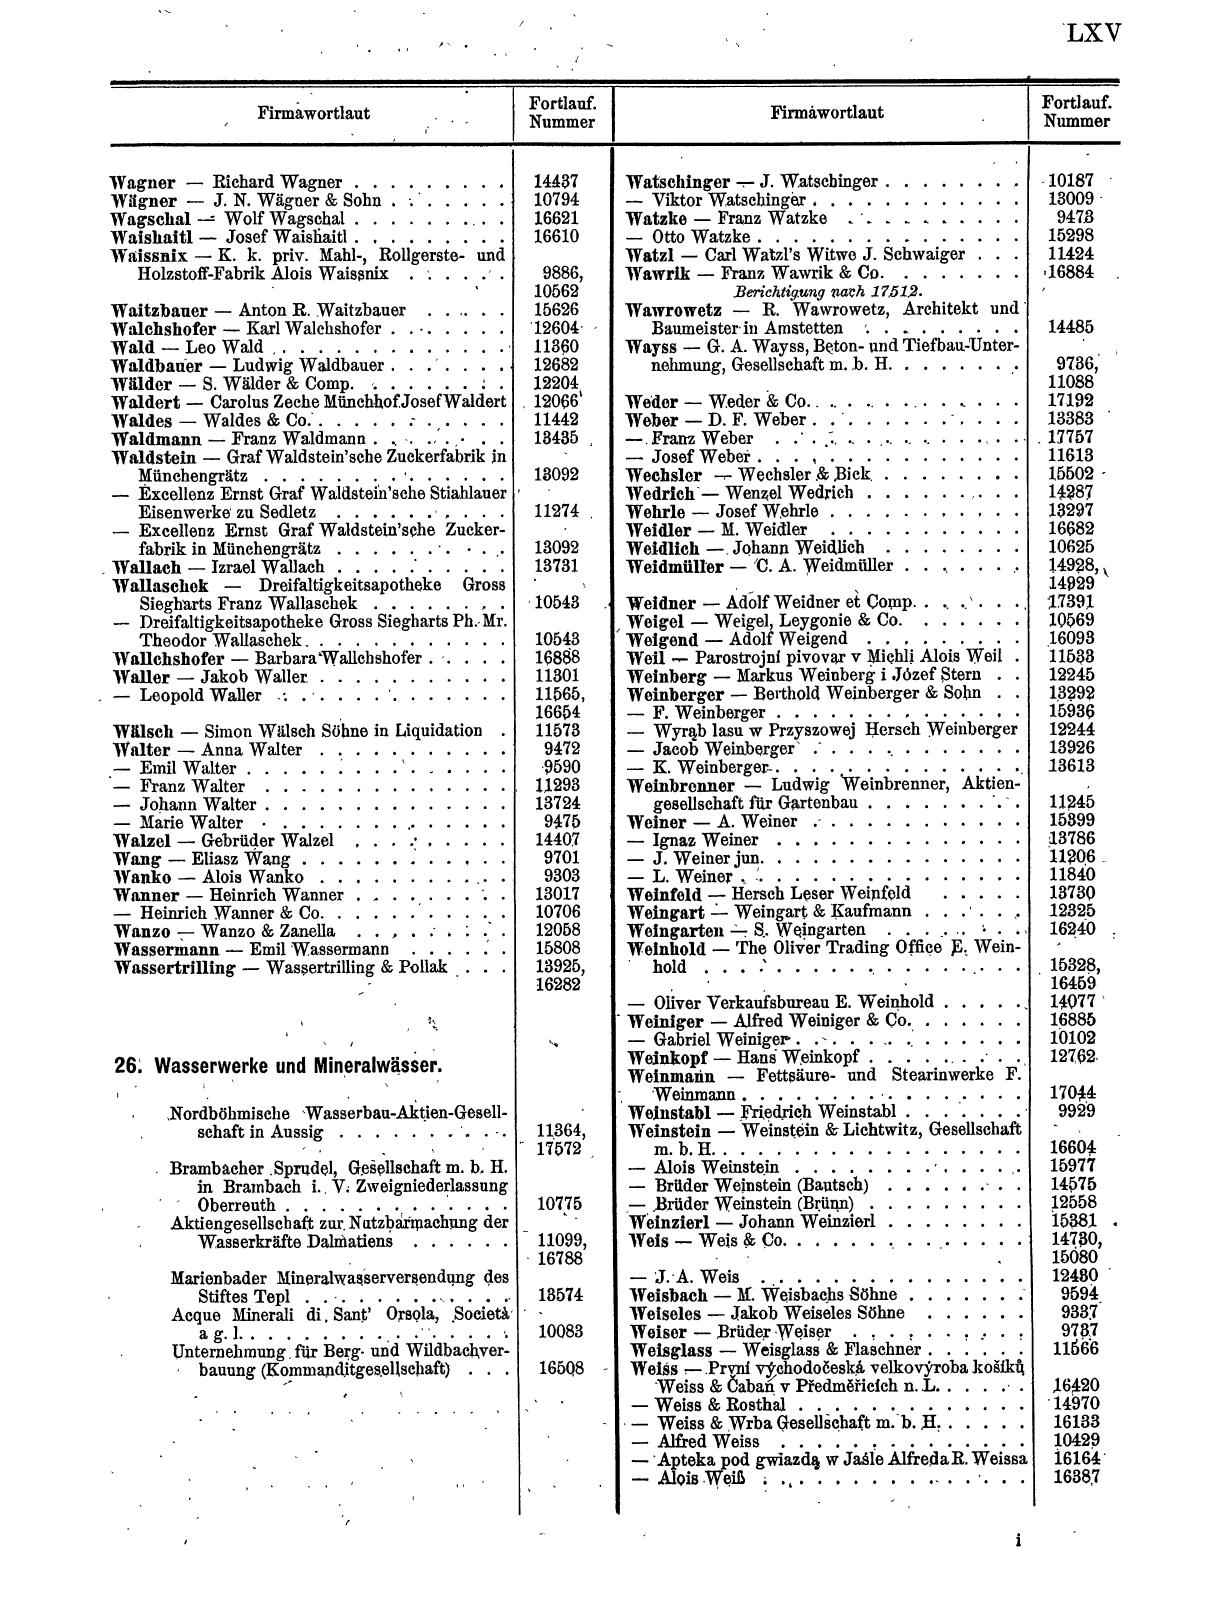 Zentralblatt für die Eintragungen in das Handelsregister 1913, Teil 2 - Seite 69